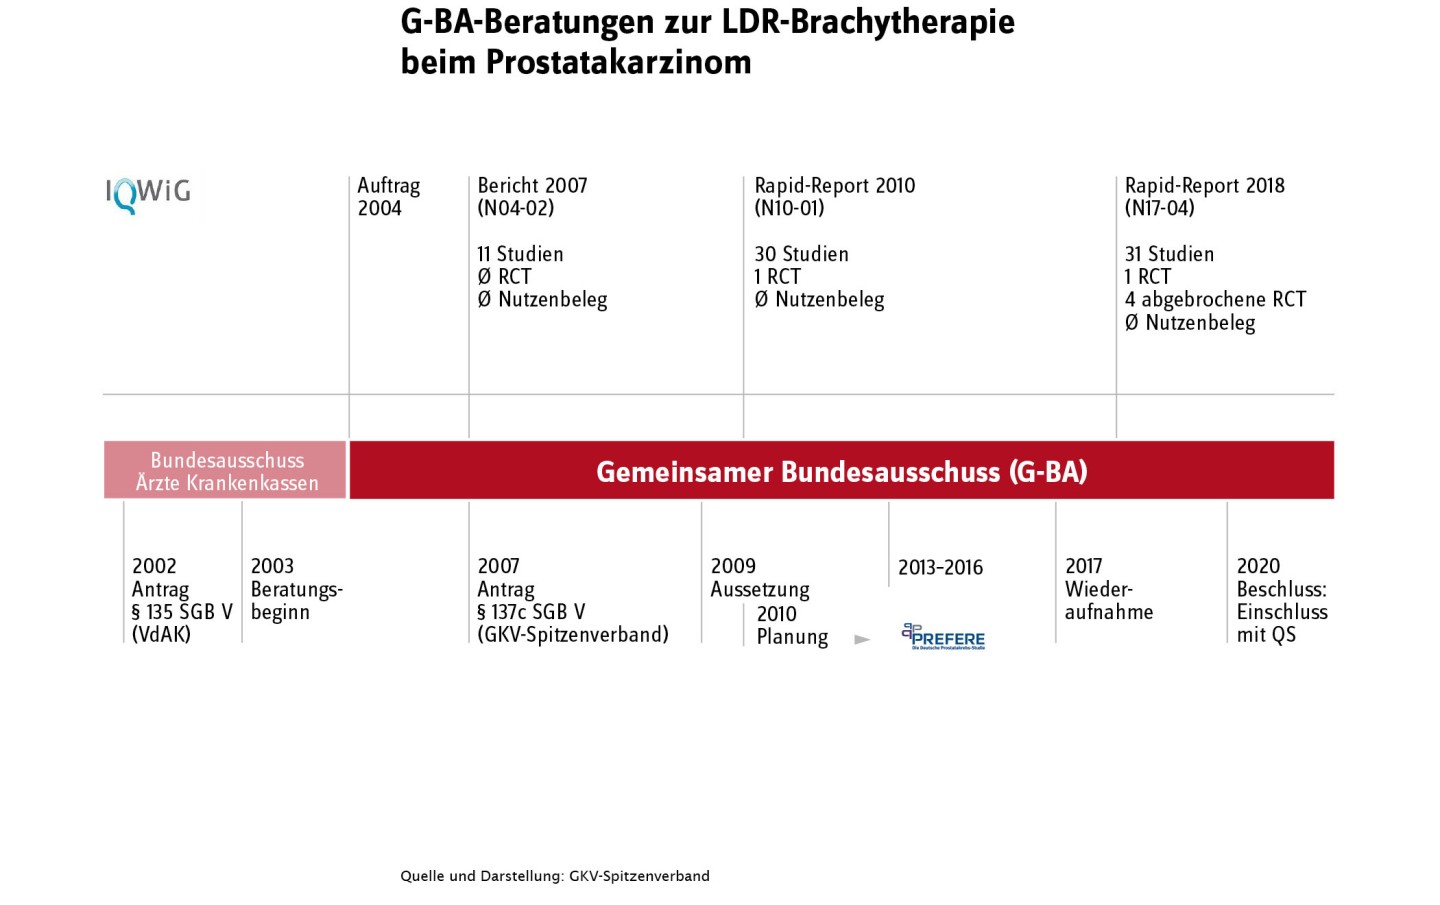 Verlaufsdarstellung der G-BA-Beratungen zur LDR-Brachytherapie beim Prostatakarzinom